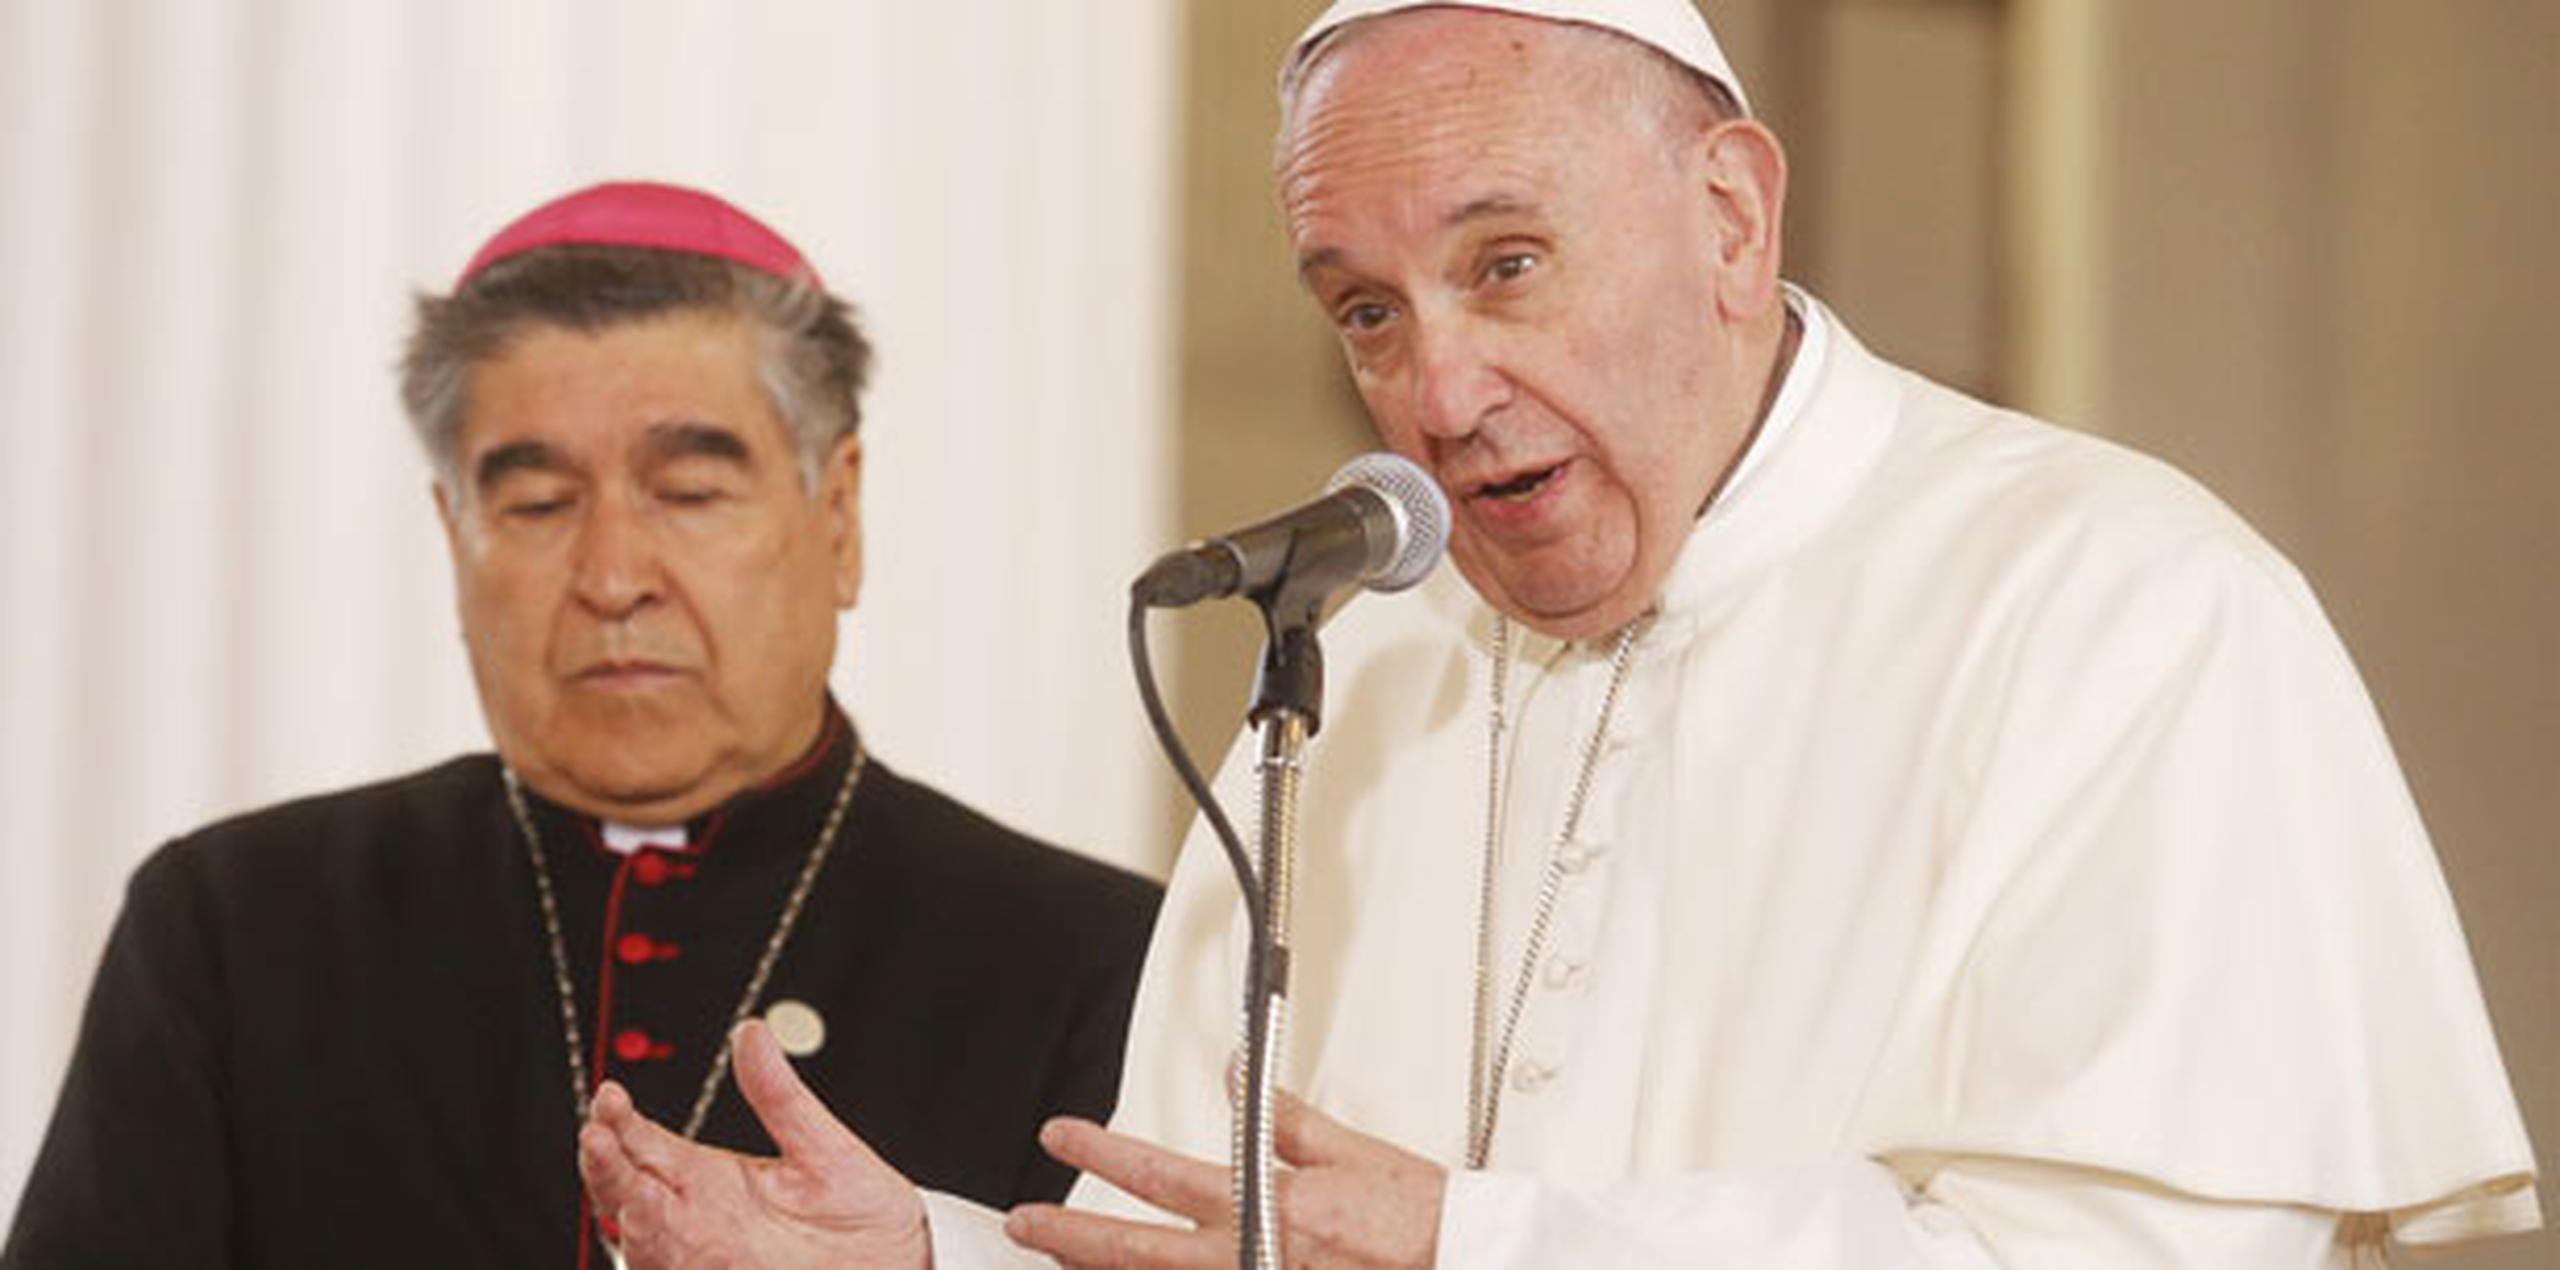 El papa reconoció que los pueblos indígenas "tienen mucho que enseñarnos". (EFE/Ulises Ruiz Basurto)